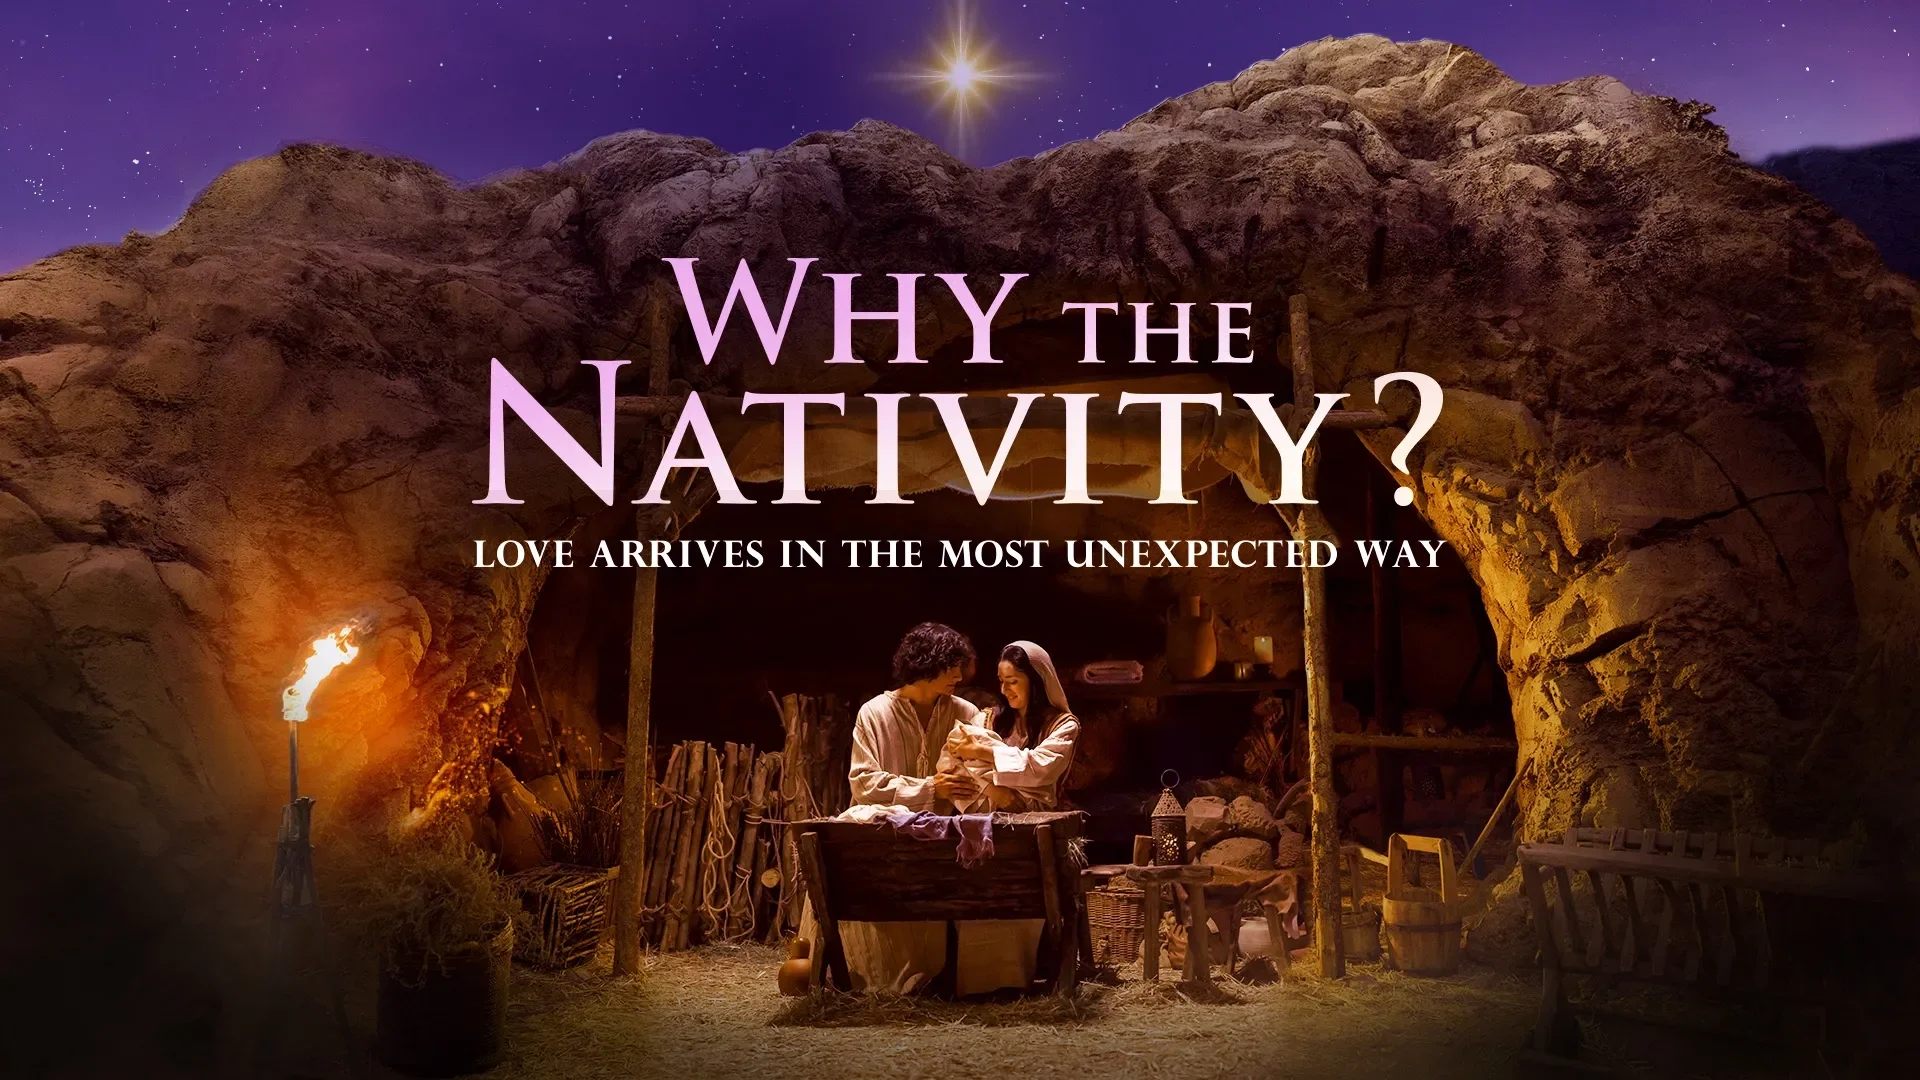 David Jeremiah: Why The Nativity?